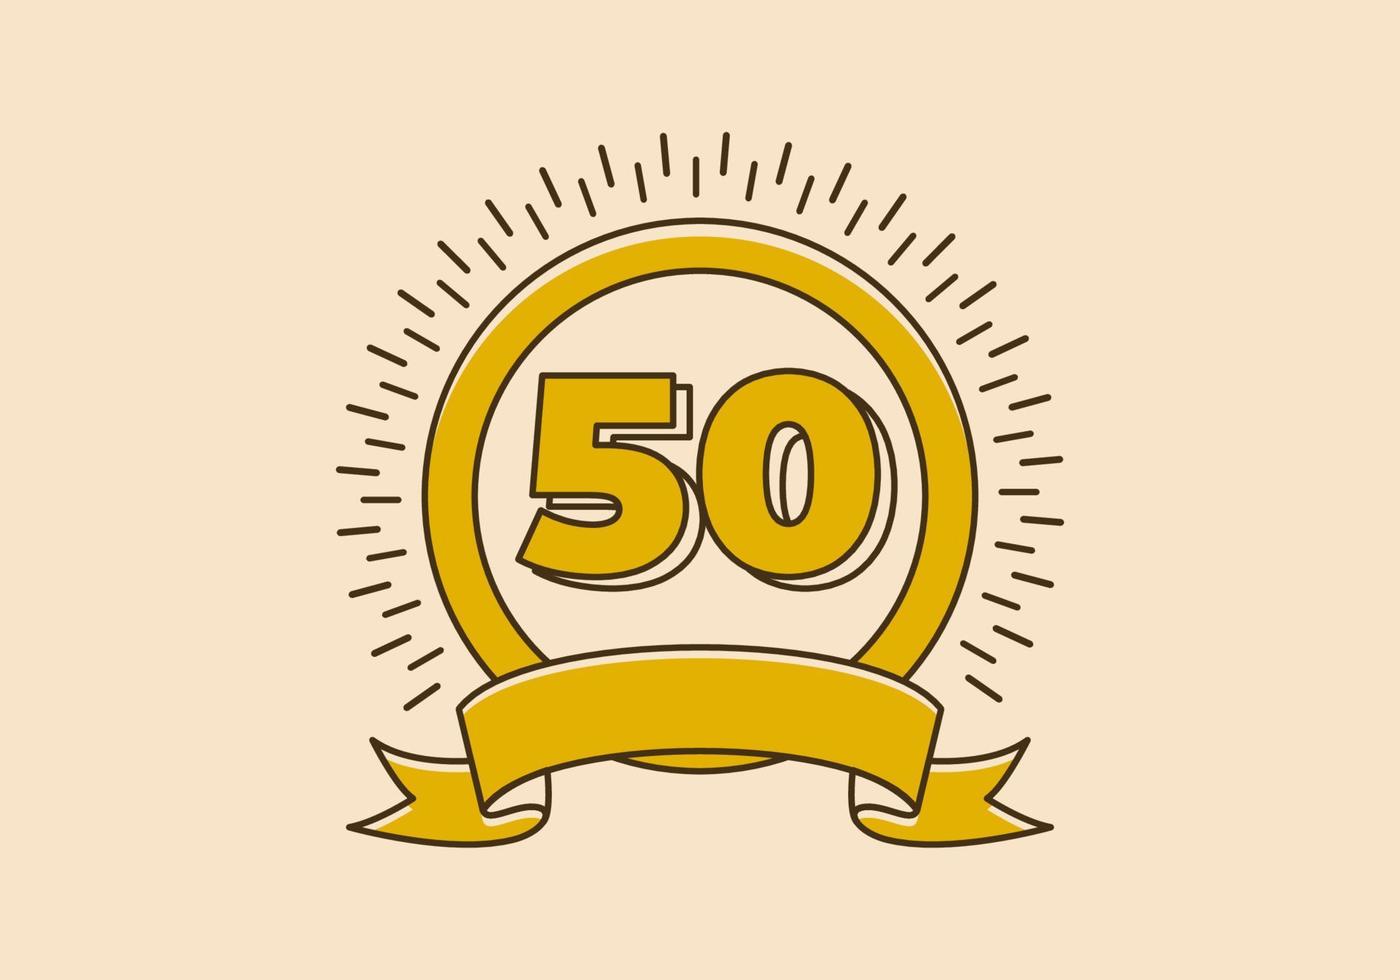 Vintage gelbes Kreisabzeichen mit der Nummer 50 darauf vektor